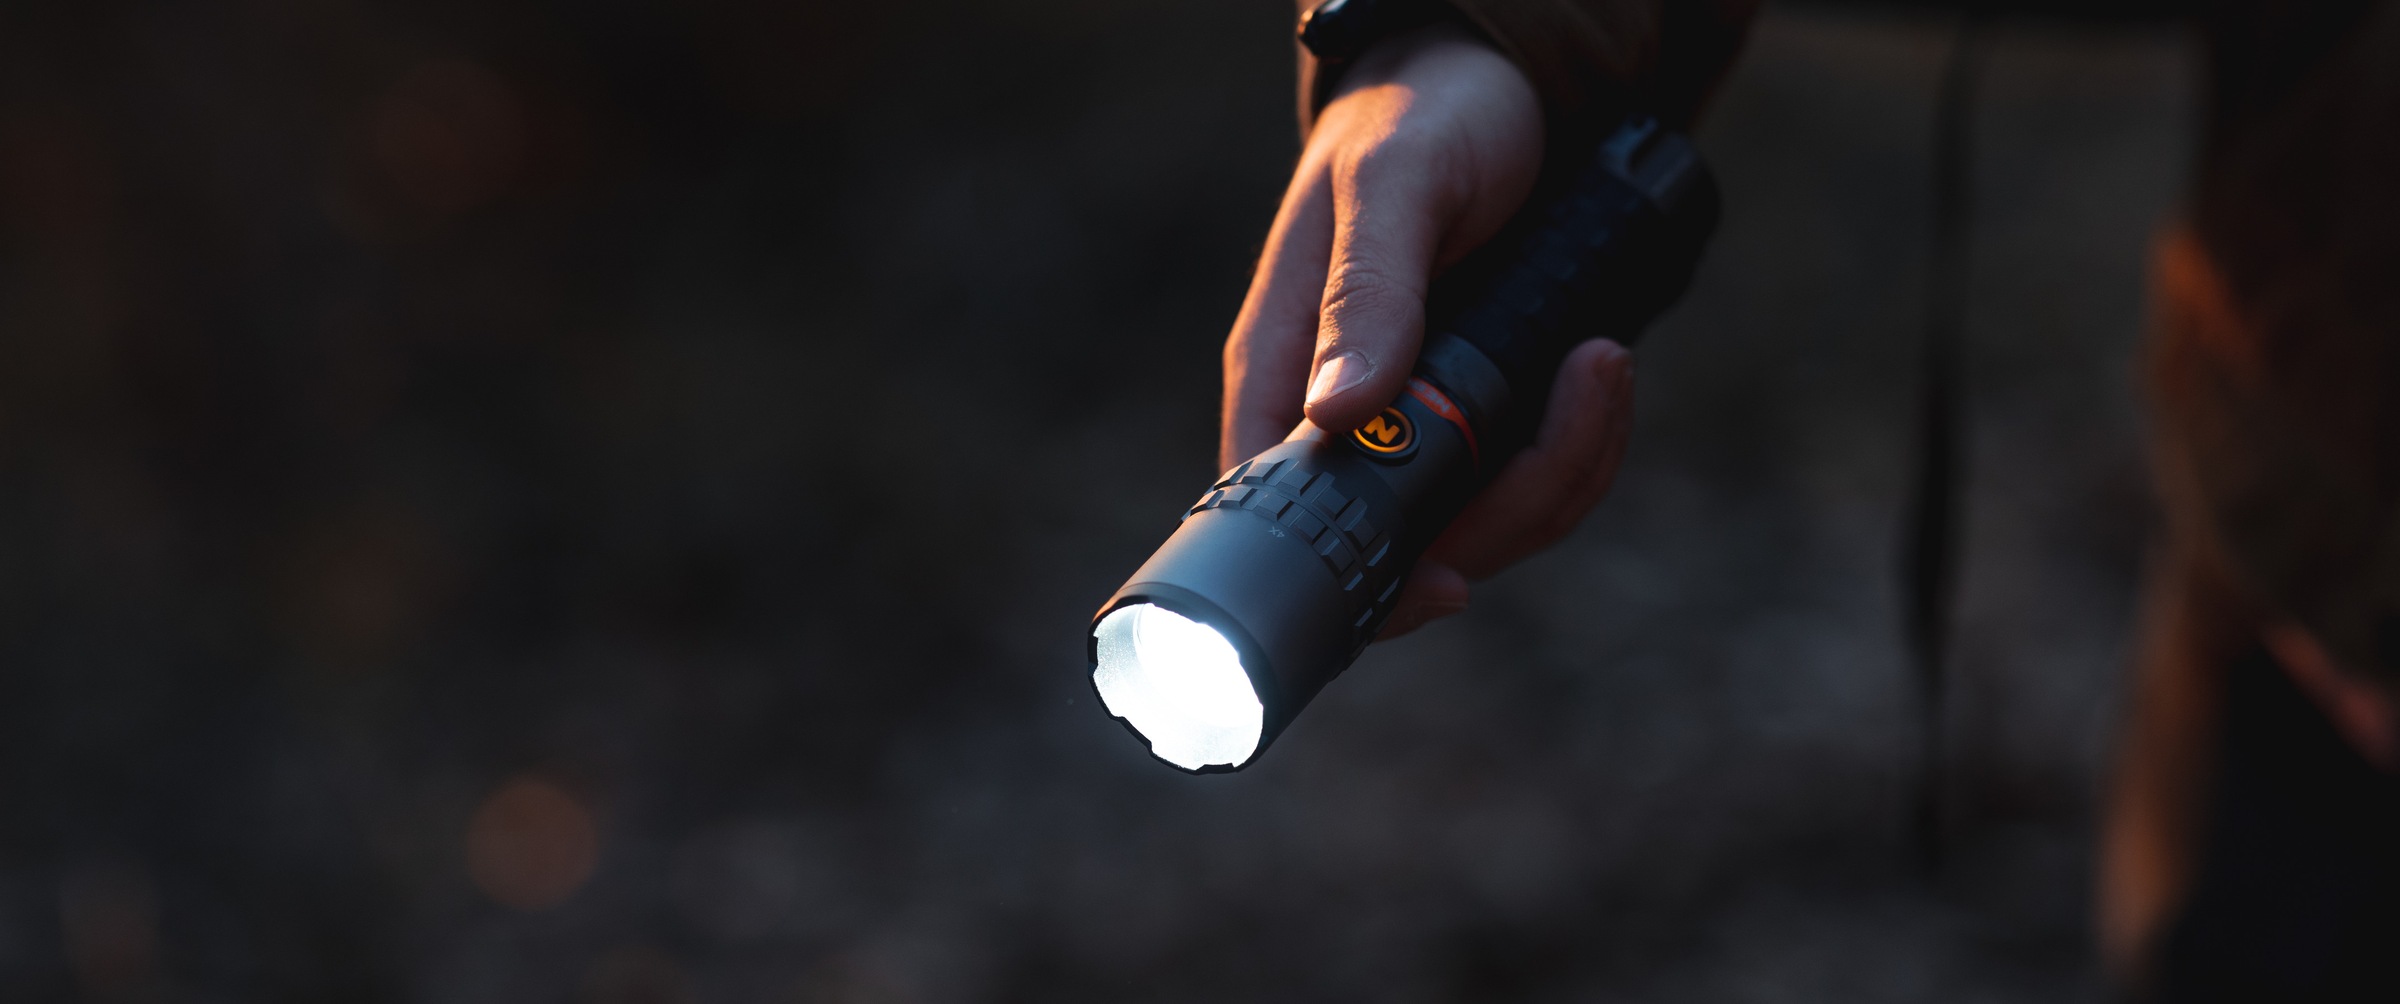 NEBO LED Taschenlampe »SLYDE KING 2K«, wiederaufladbar, Taschlampe und Arbeitsleuchte, ergonomischer Griff